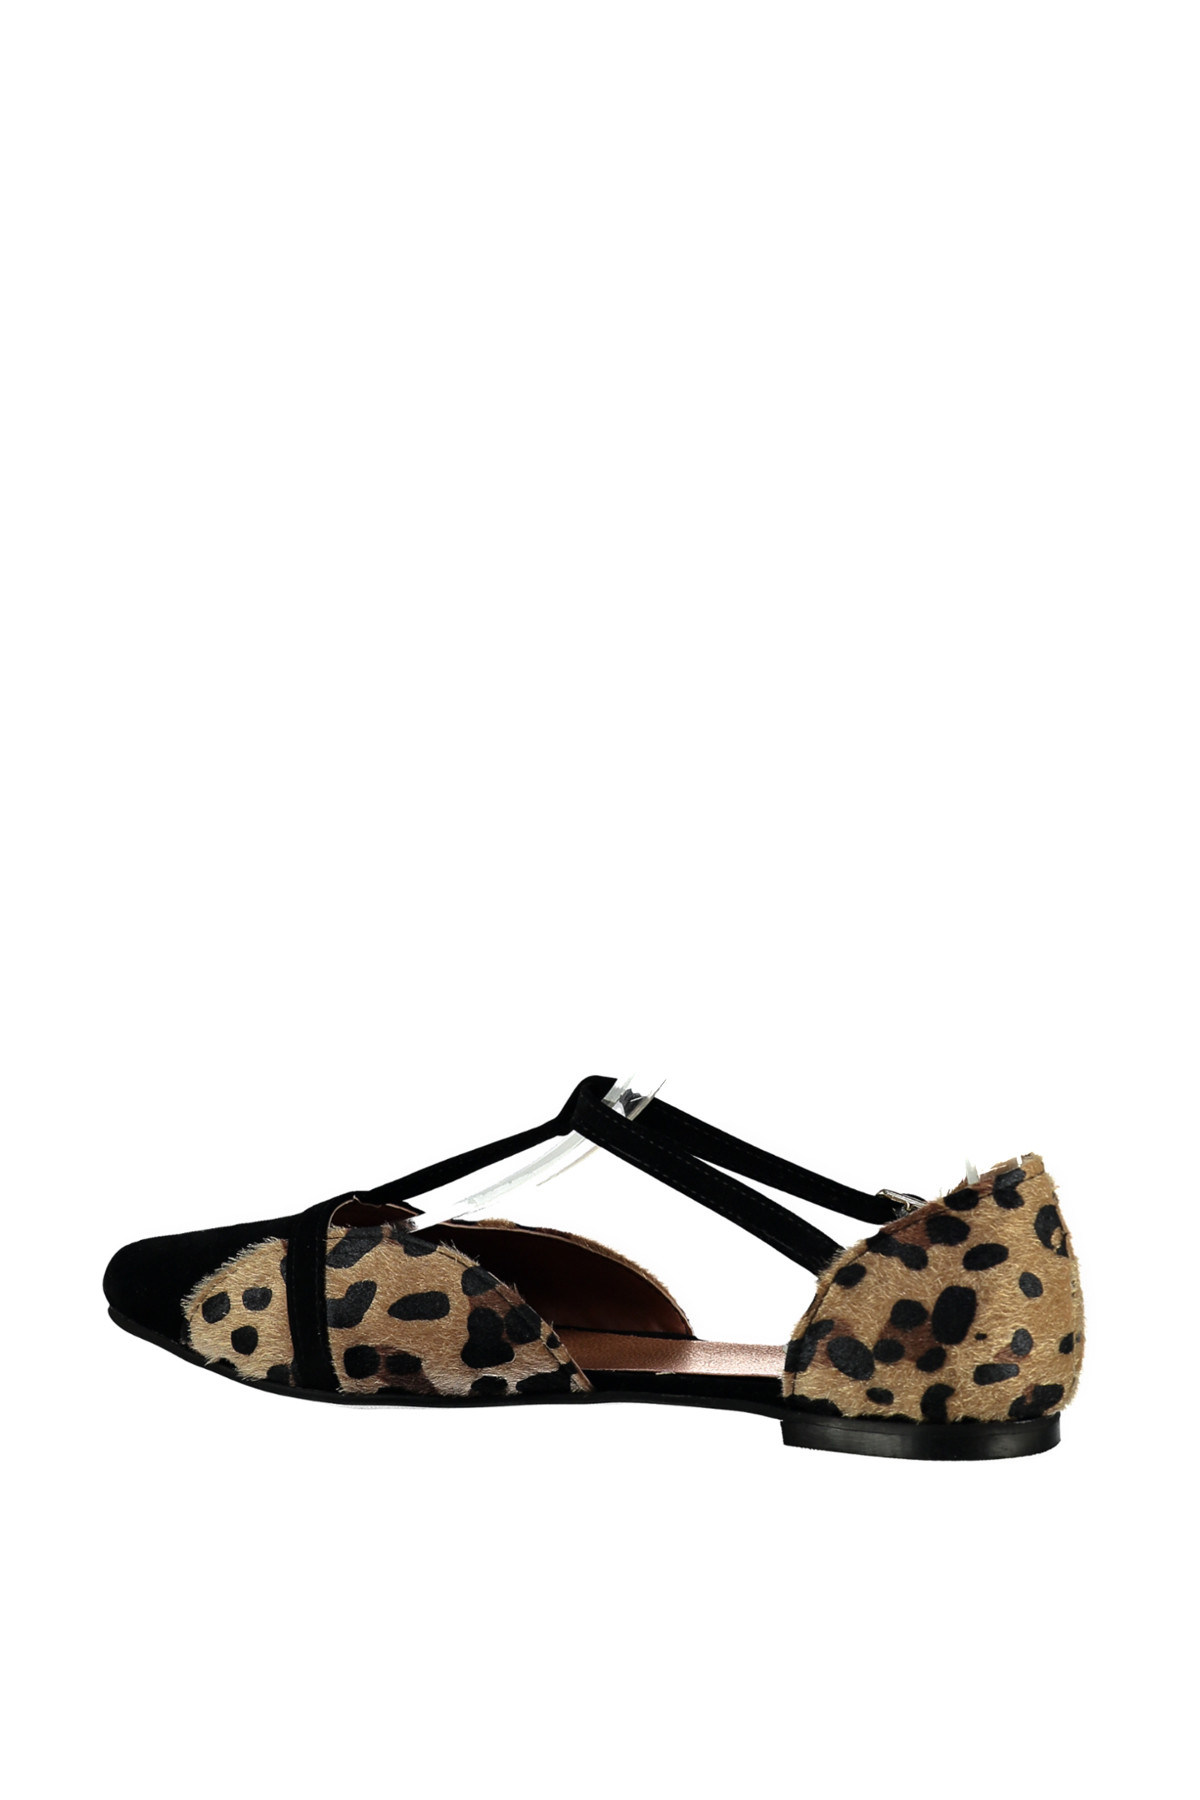 Fox Shoes Leopar Siyah Kadın Ayakkabı B726881802 ON7342